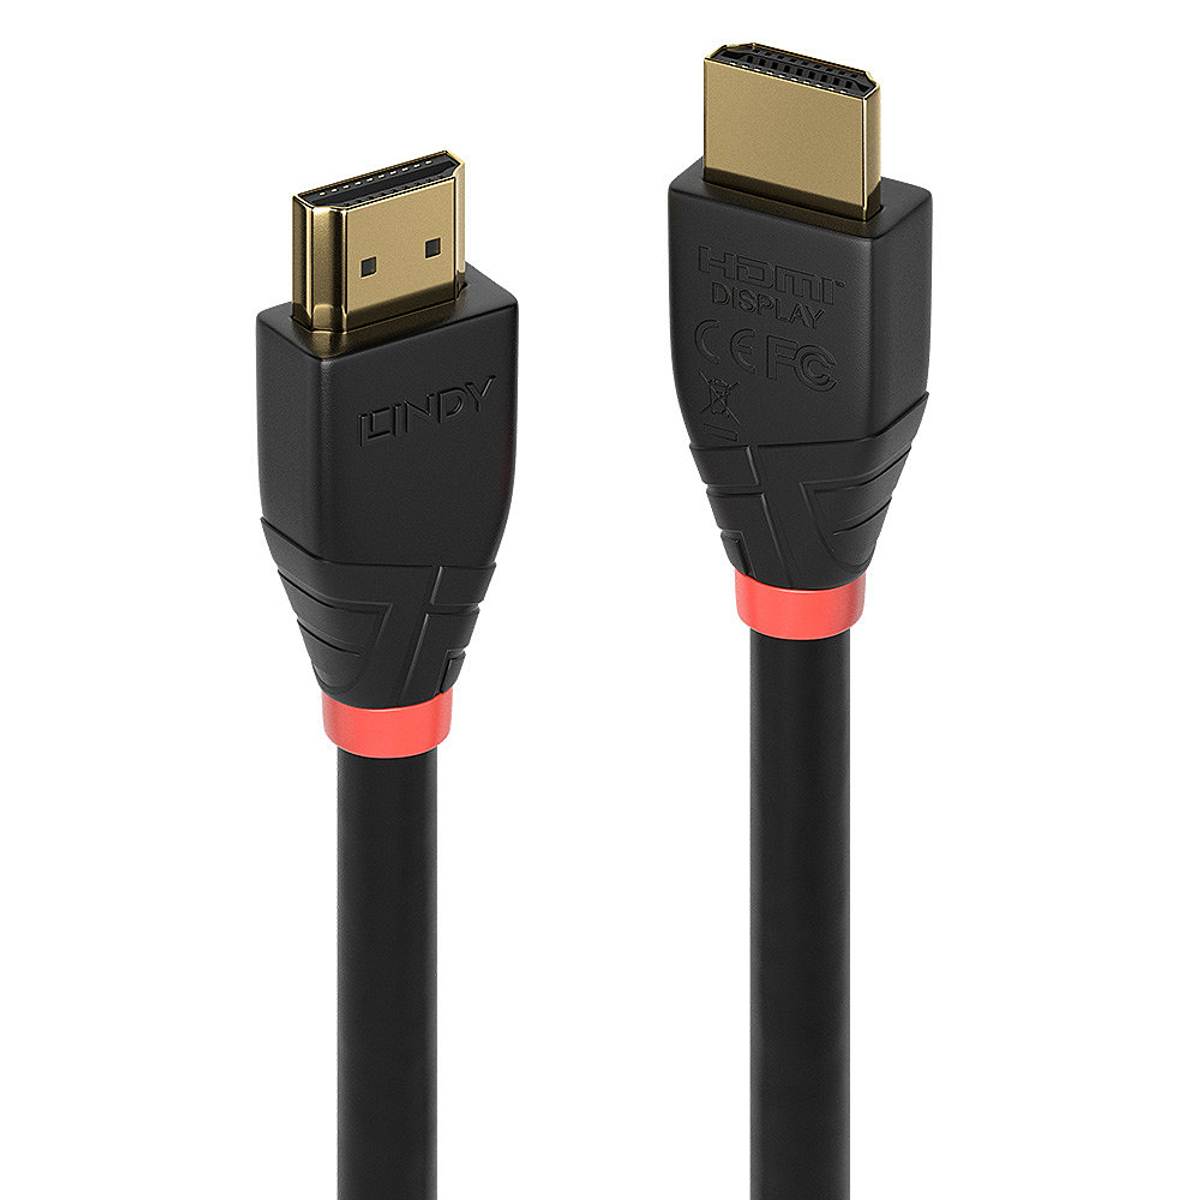 LINDY m 41074, HDMI-Kabel, 25